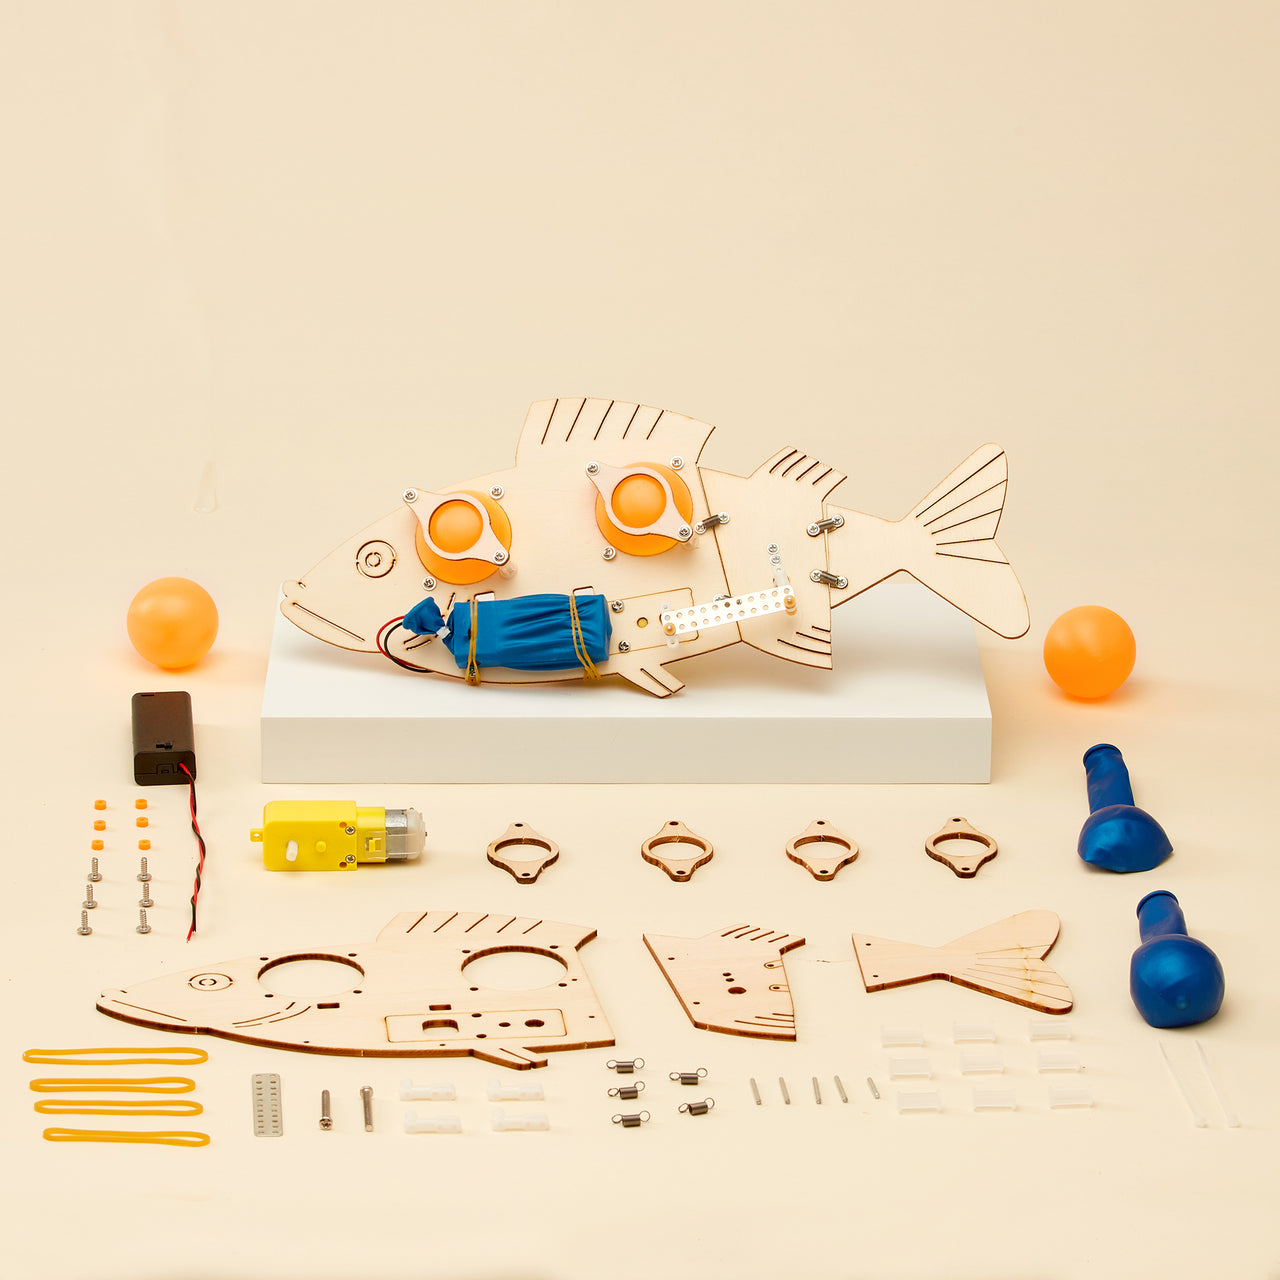 CreateKit Bionic Fish Robot DIY Kit